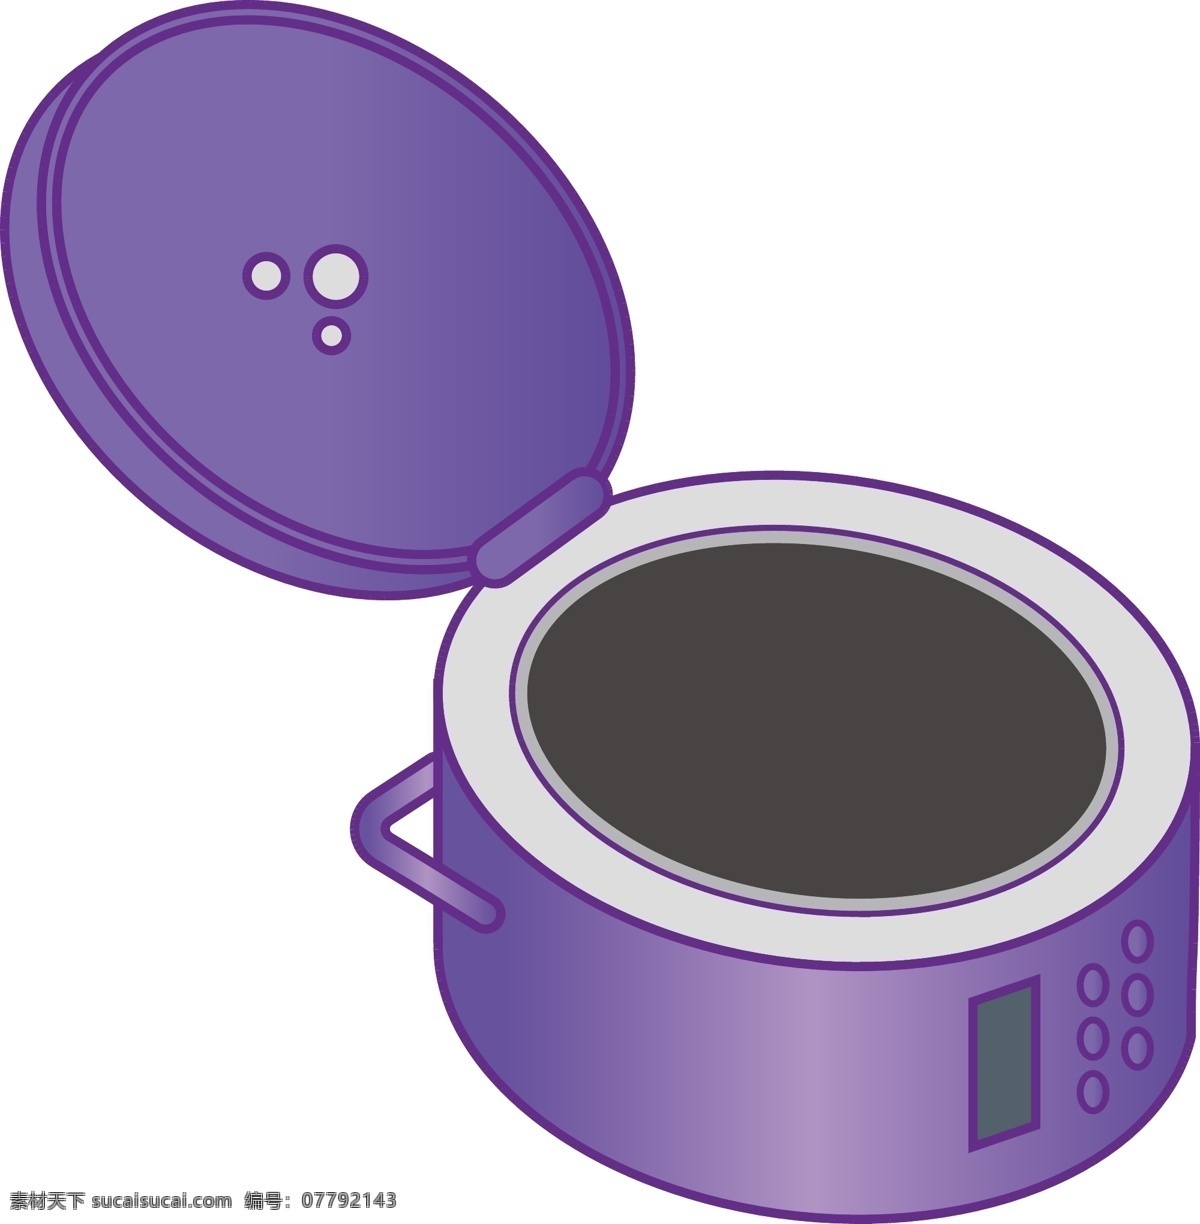 紫色 厨房用具 电饭煲 厨房 用具 美食 锅子